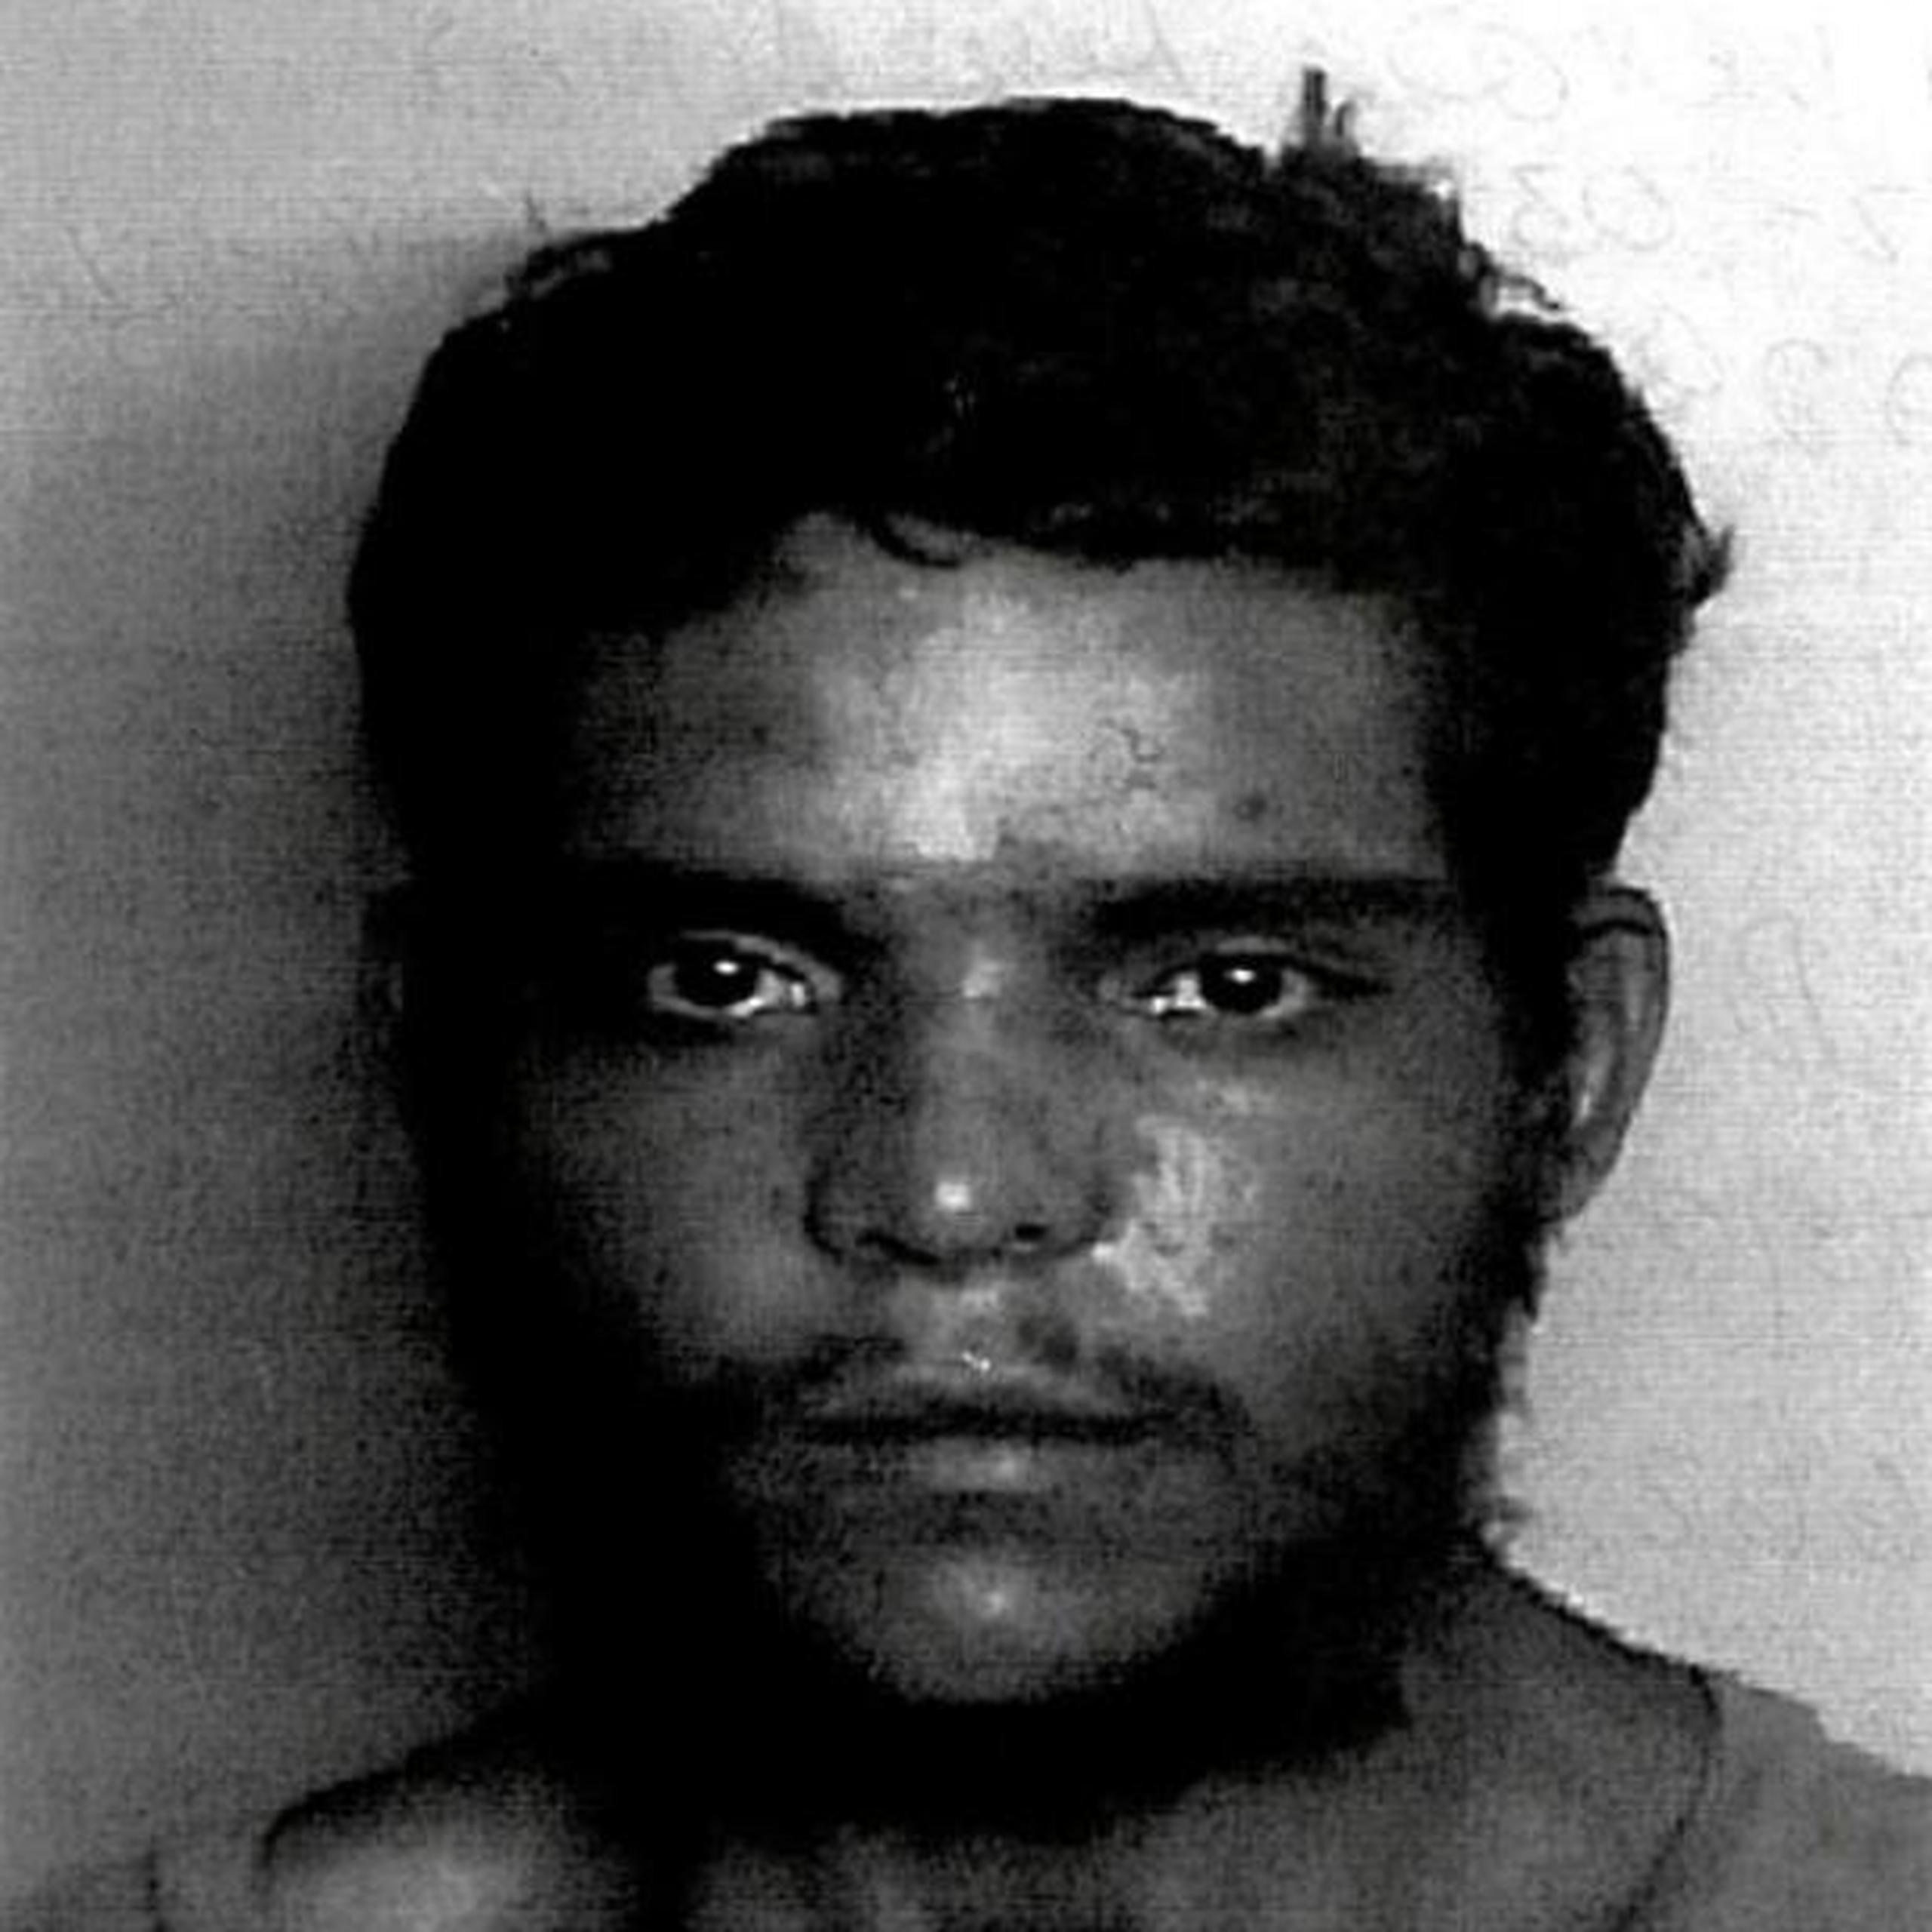 El imputado fue identificado como Héctor M. Román Olmo, de 28 años. (Suministrada)